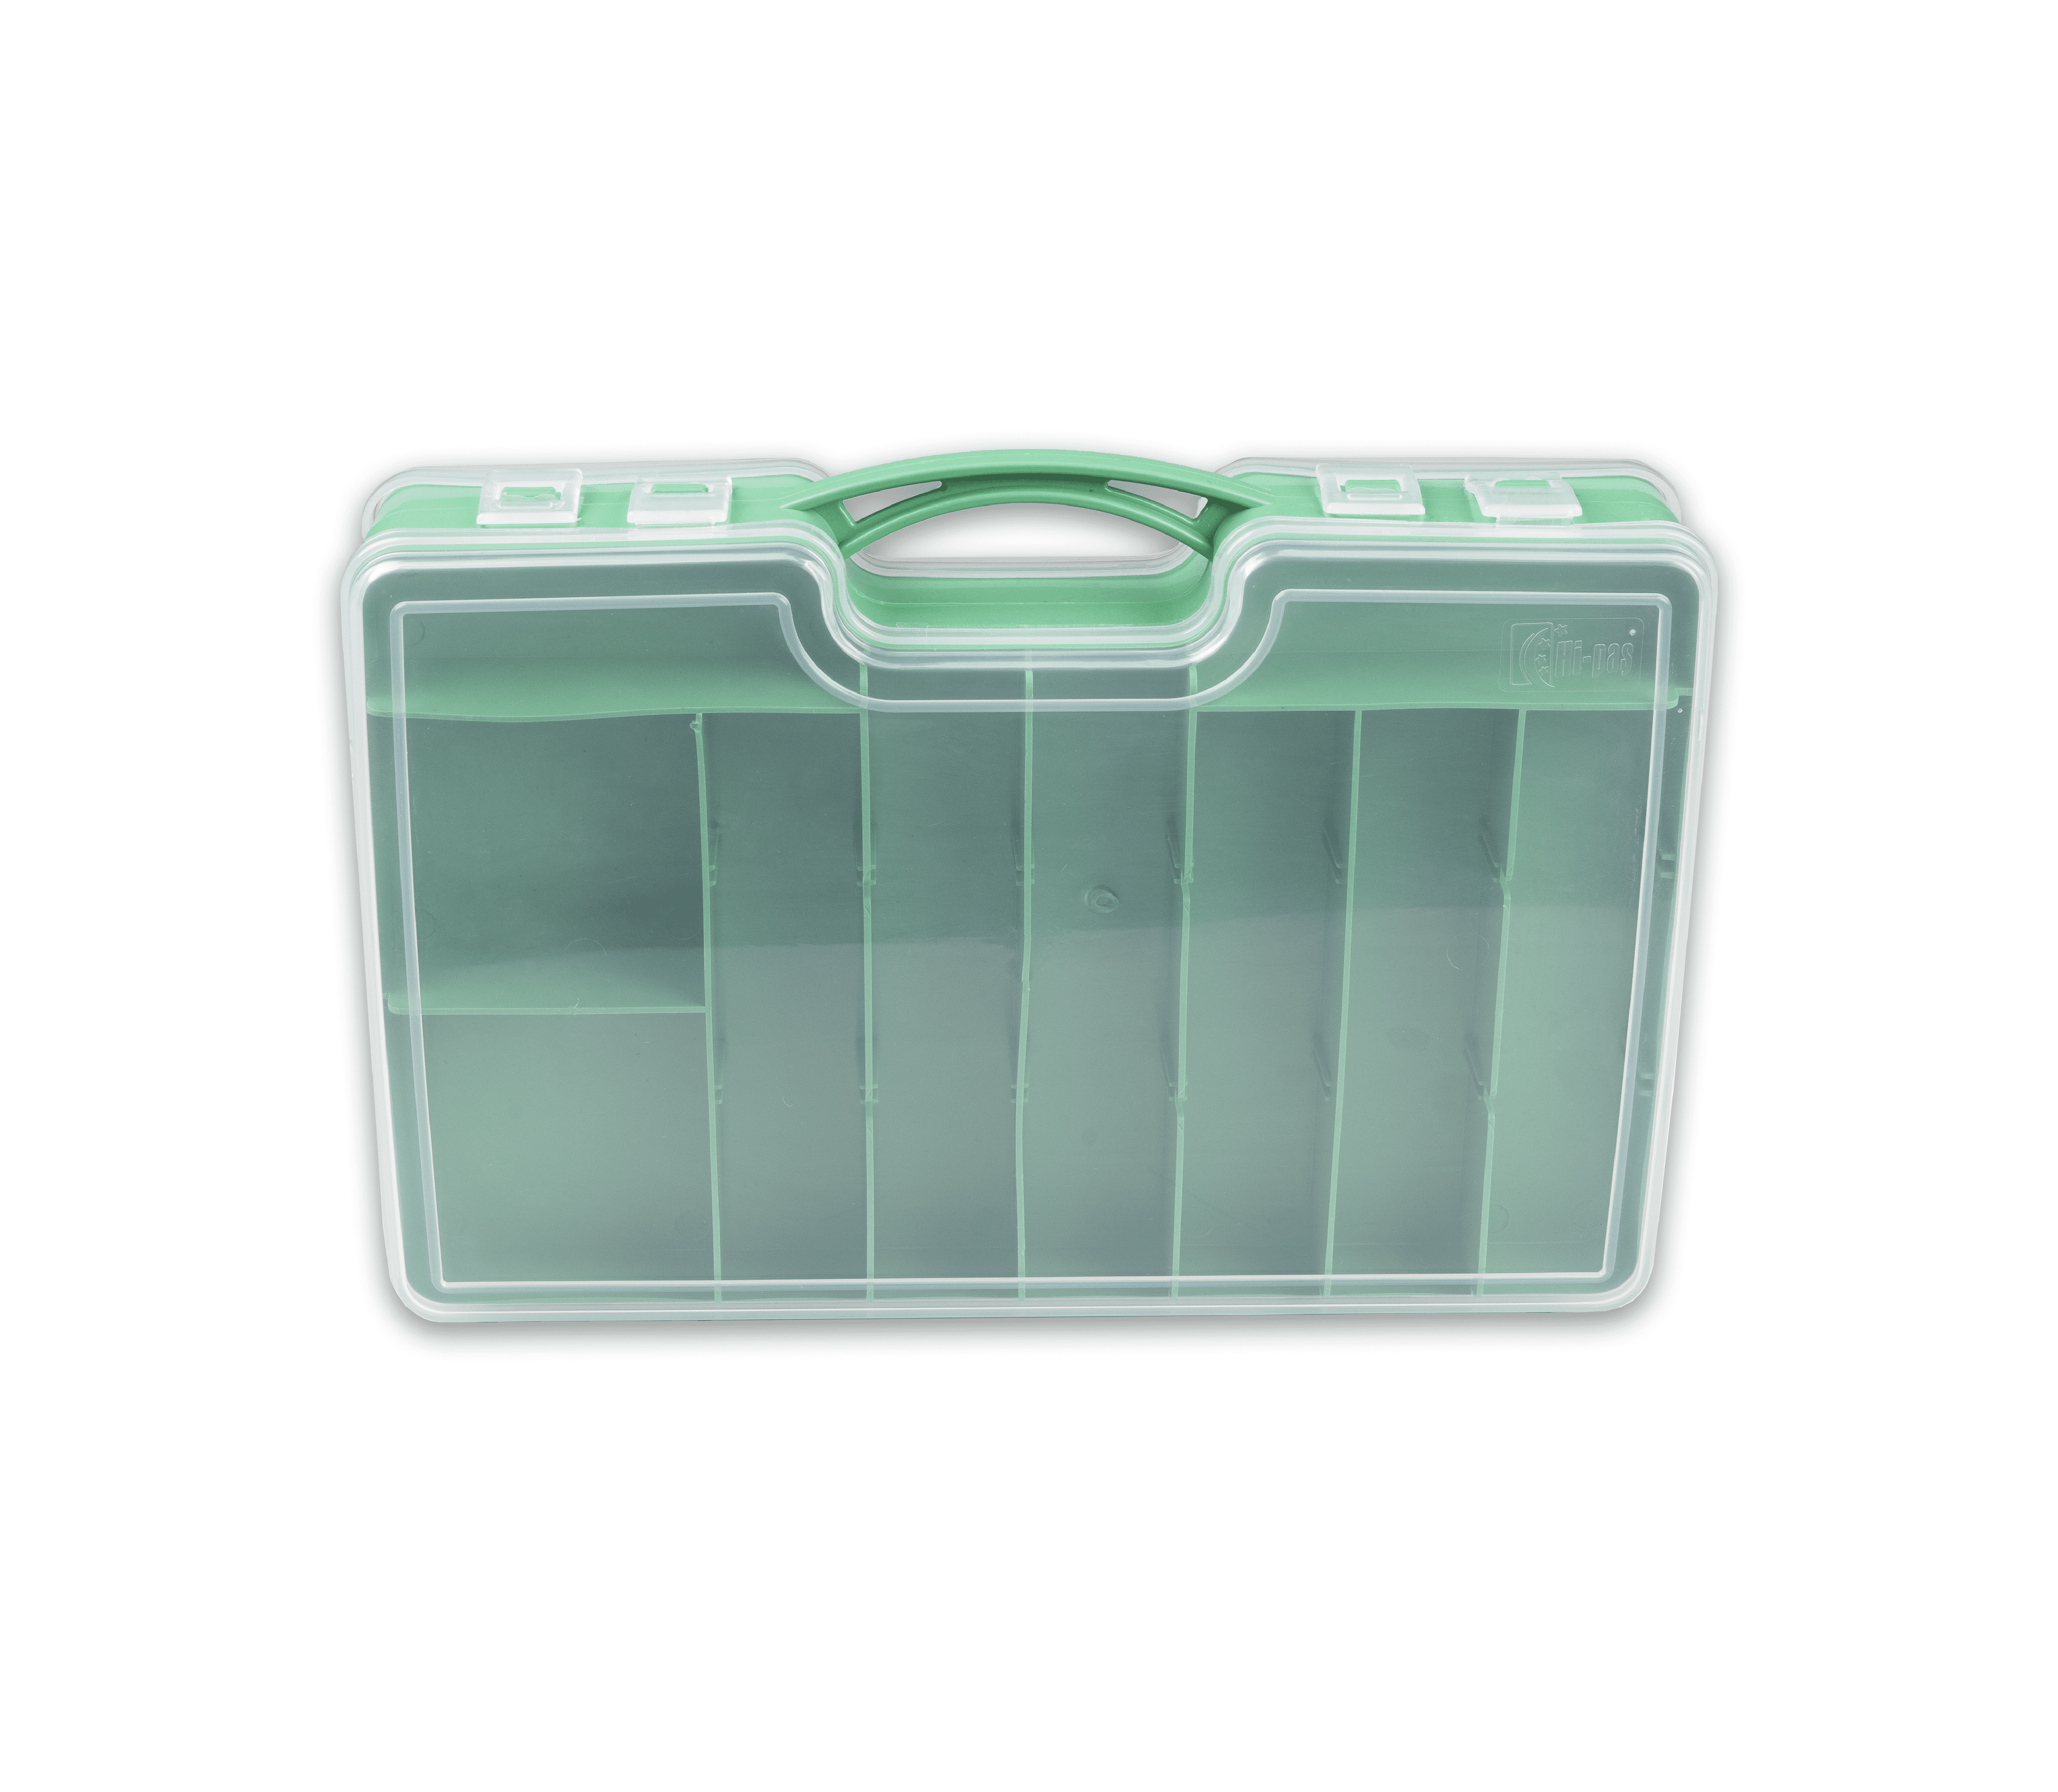 Çift Taraflı Organizer Kutu Plastik 44 Seyyar Bölmeli 19x29x6 CM Yeşil - 844